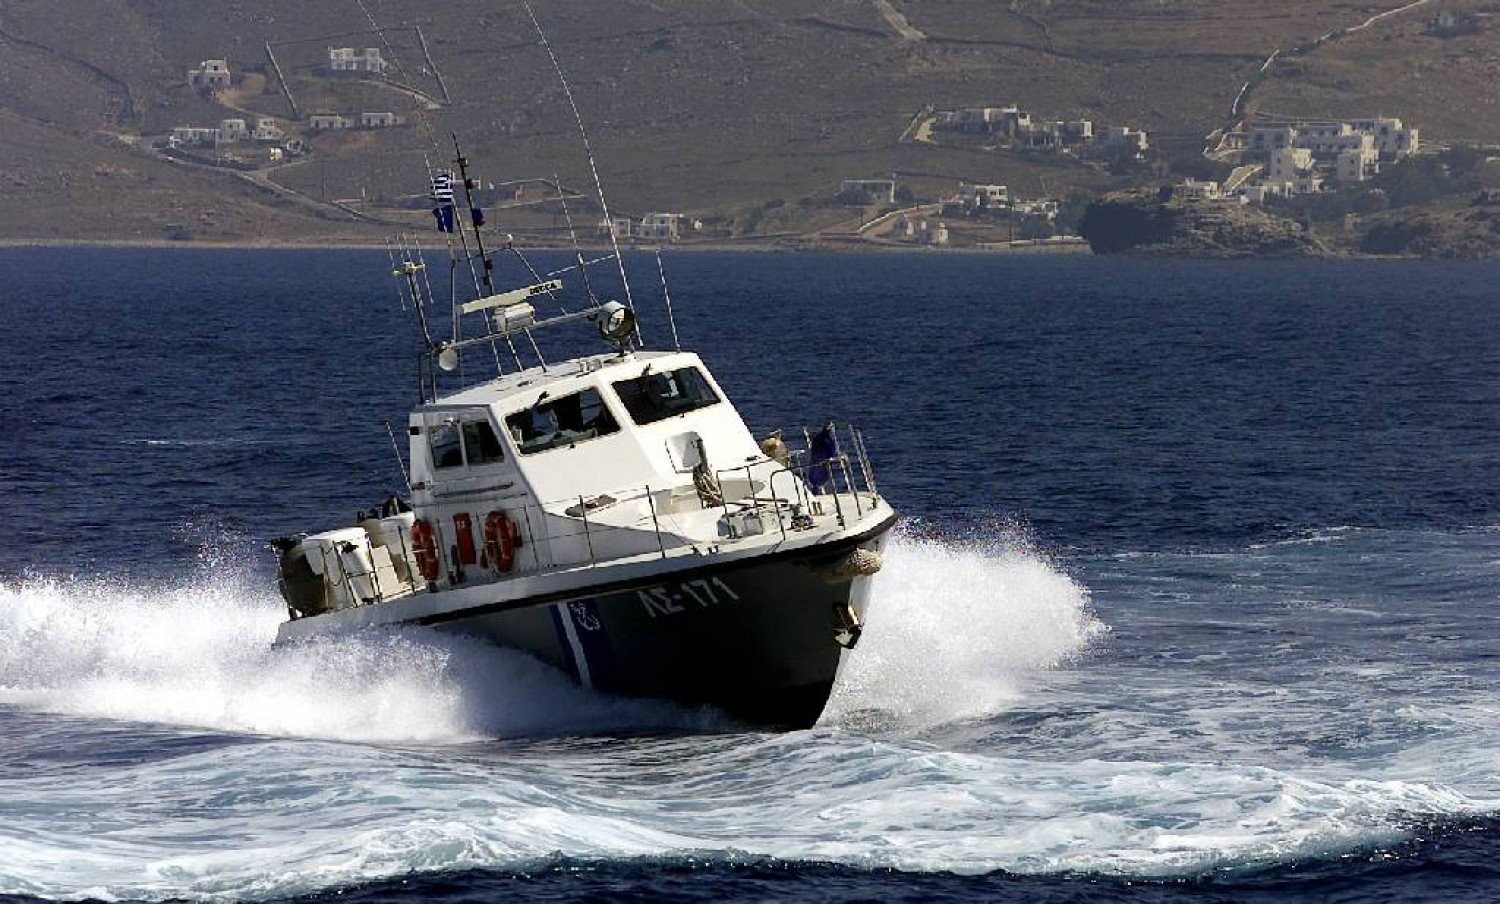 Ηράκλειο: Εντοπίστηκε το πτώμα του 35χρονου που παρασύρθηκε χθες από τα δυνατά ρεύματα της θάλασσας